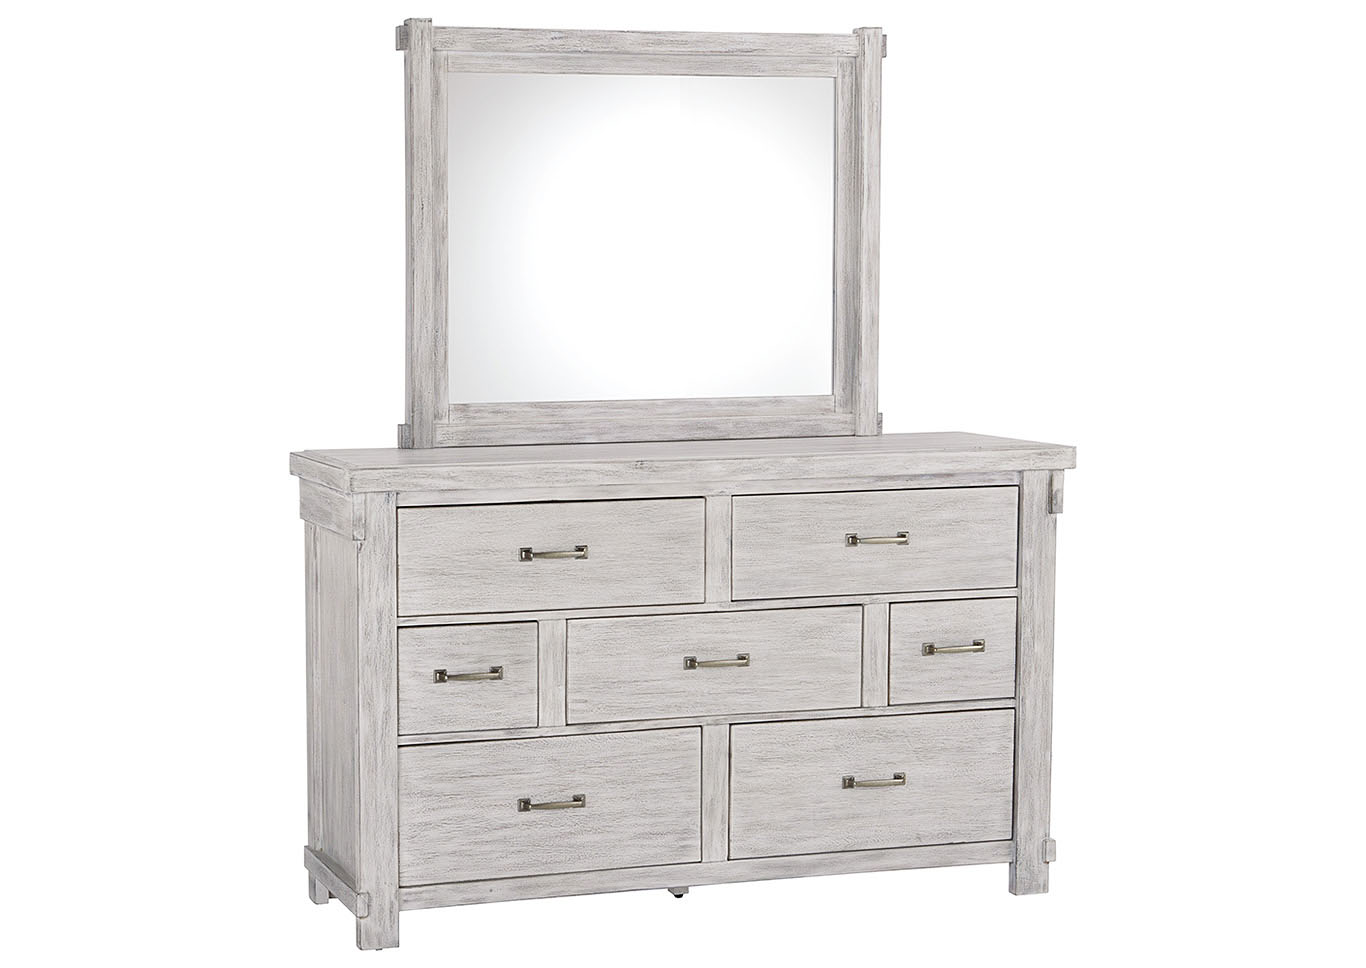 Dream Decor Furniture Brashland White Dresser Mirror